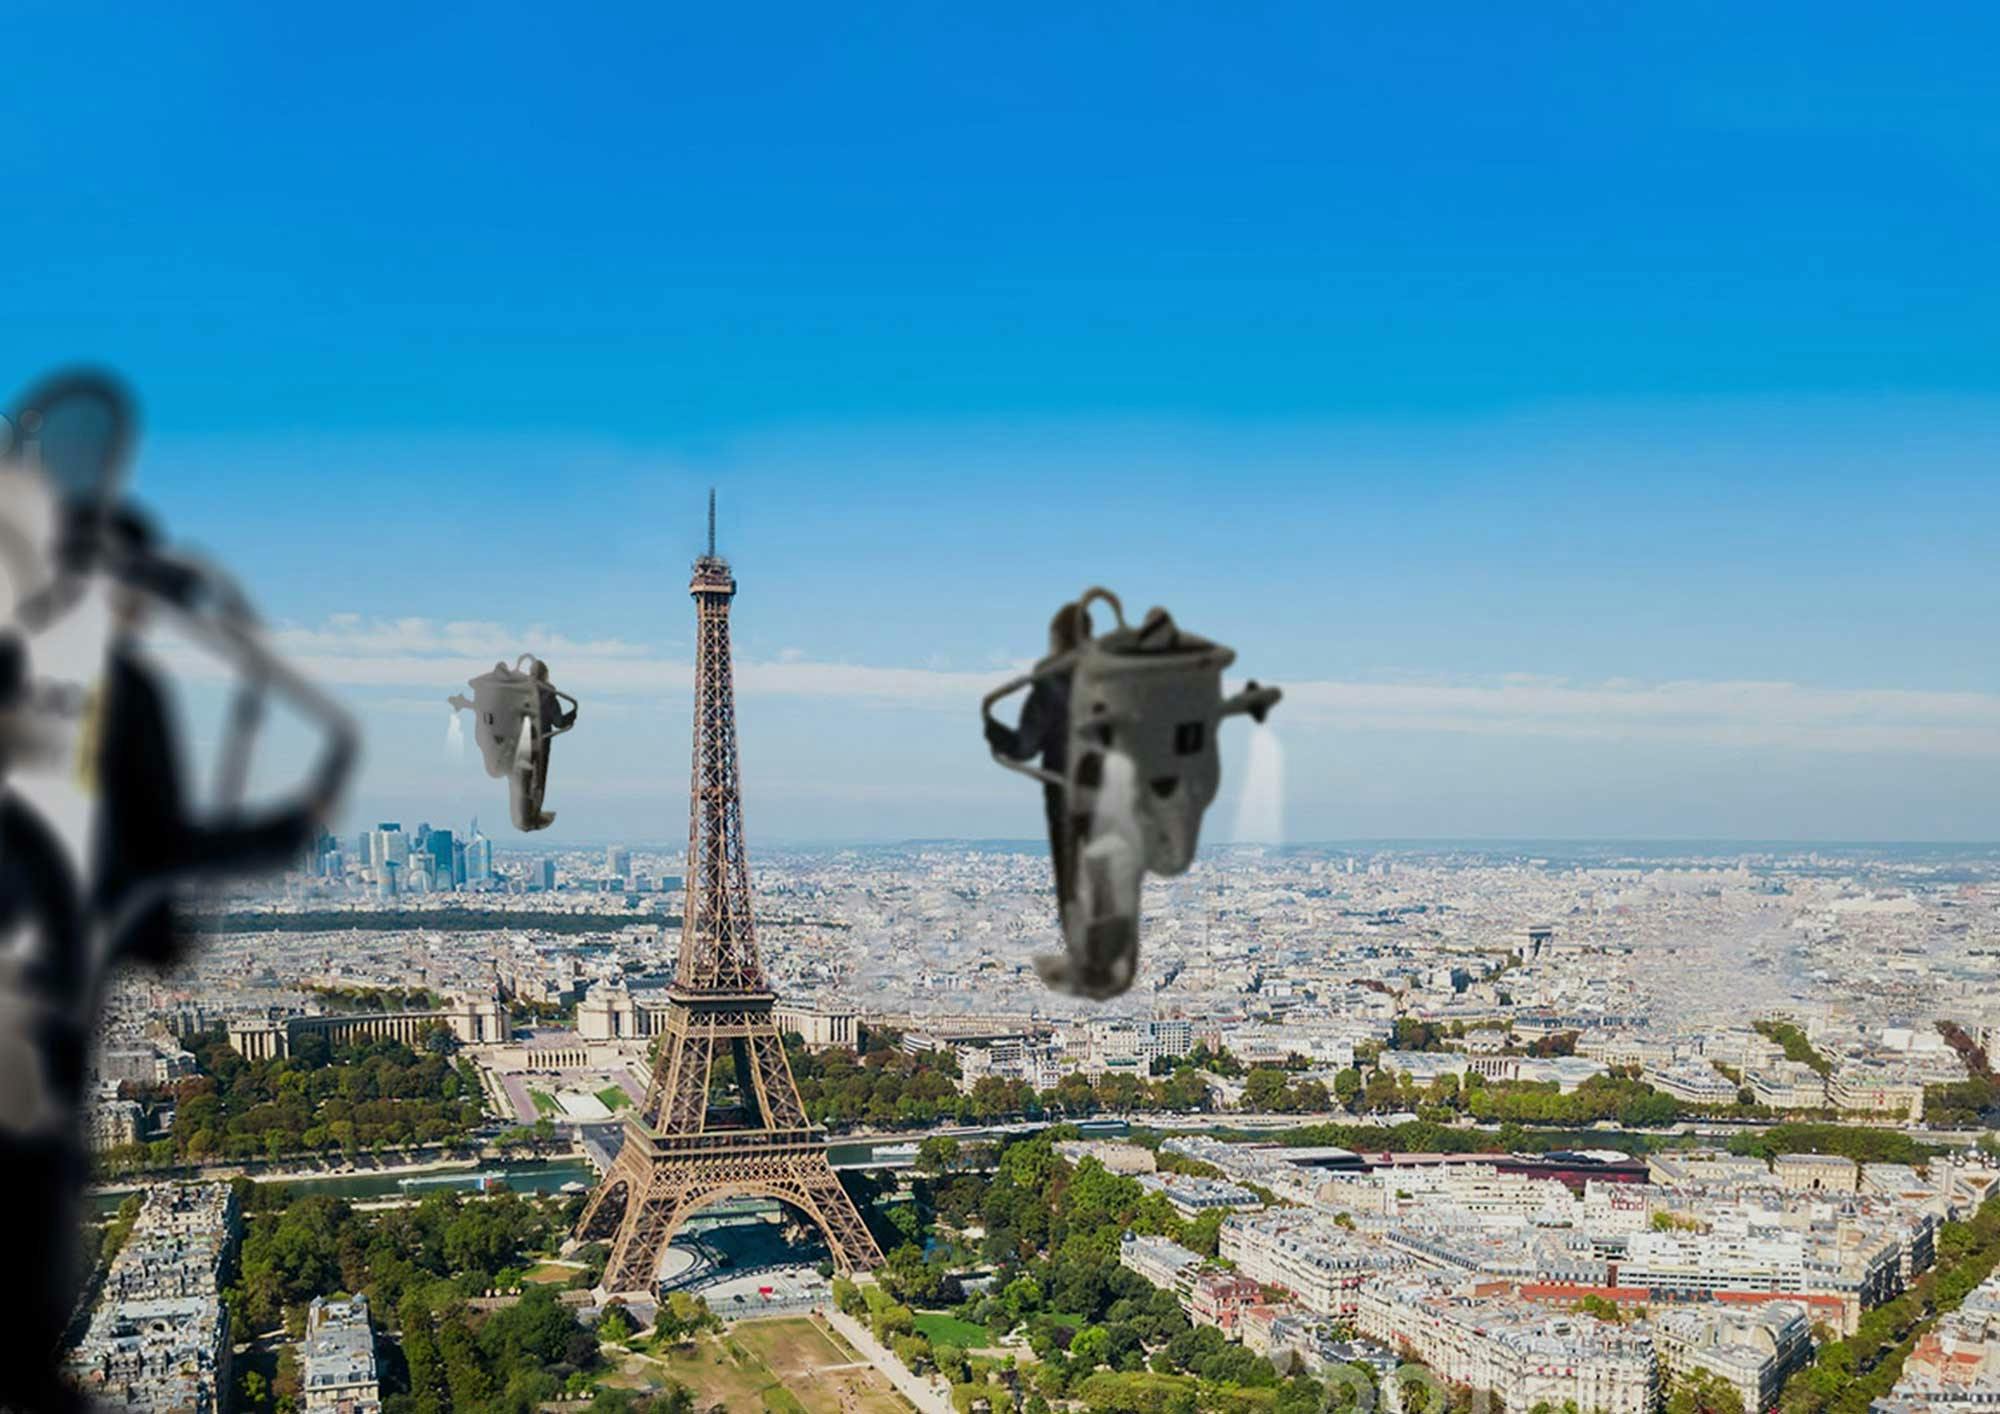 Lot nad Paryżem w wirtualnej rzeczywistości